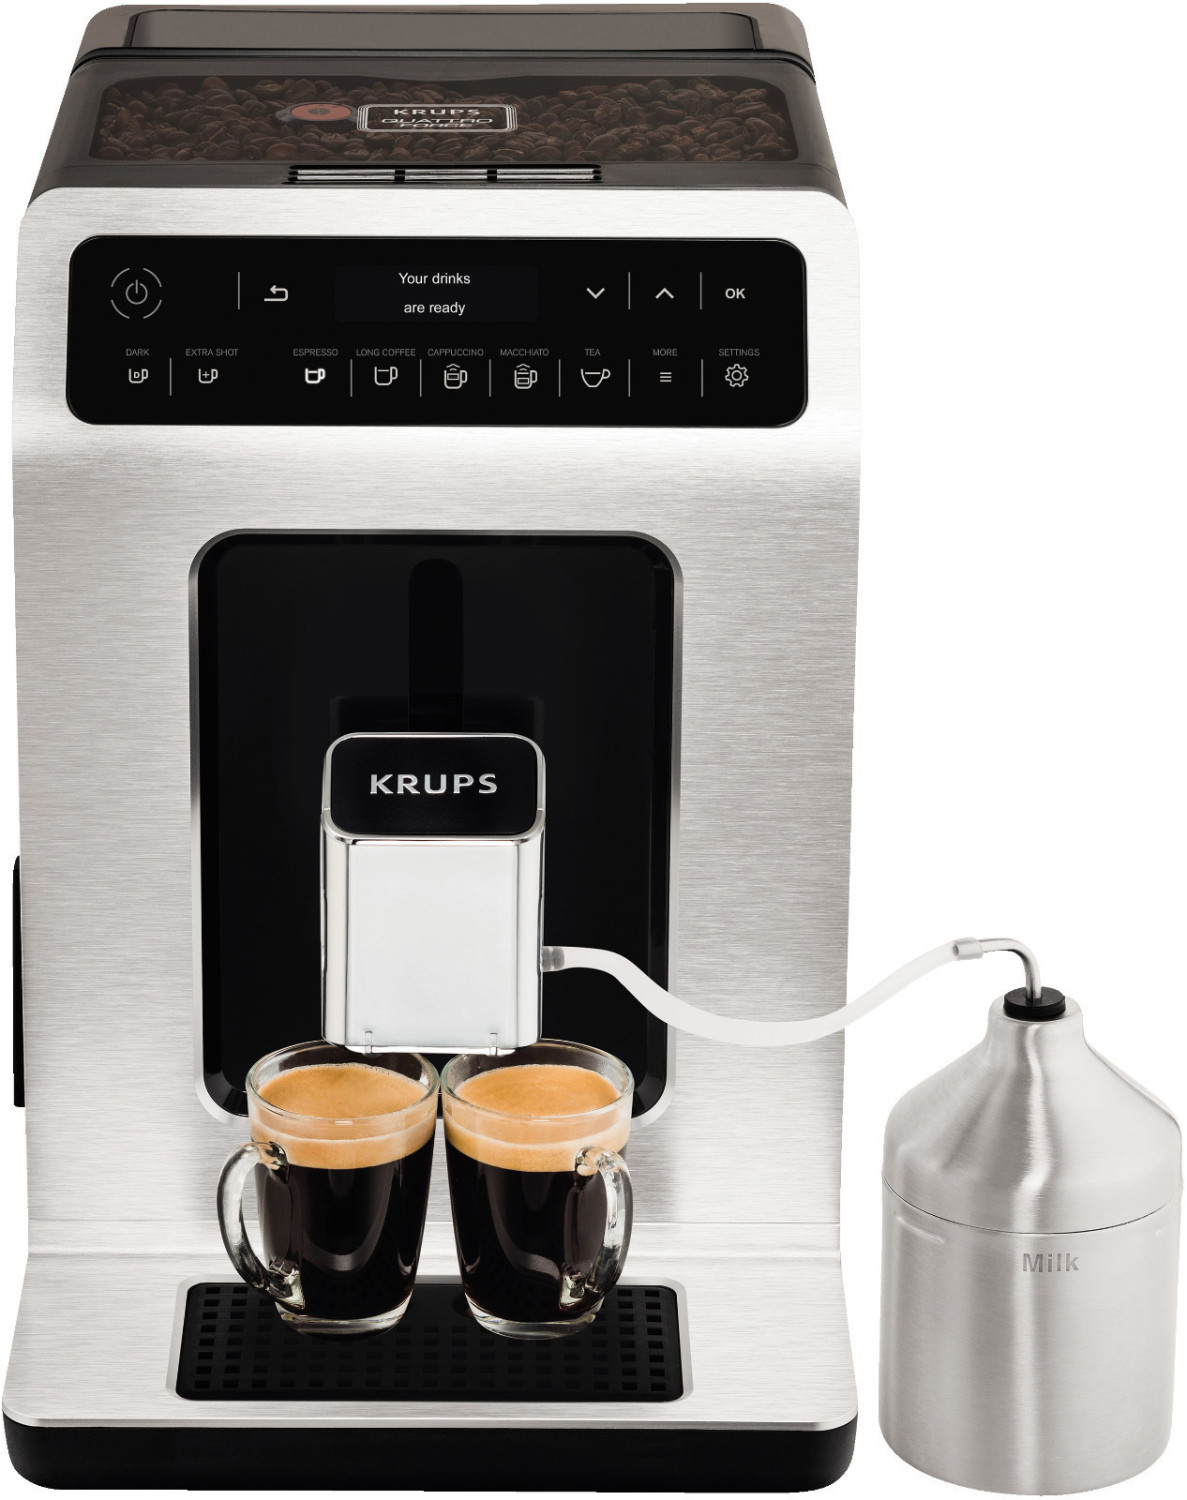 Test Krups Expresso broyeur Evidence : une machine à café trop limitée -  Les Numériques